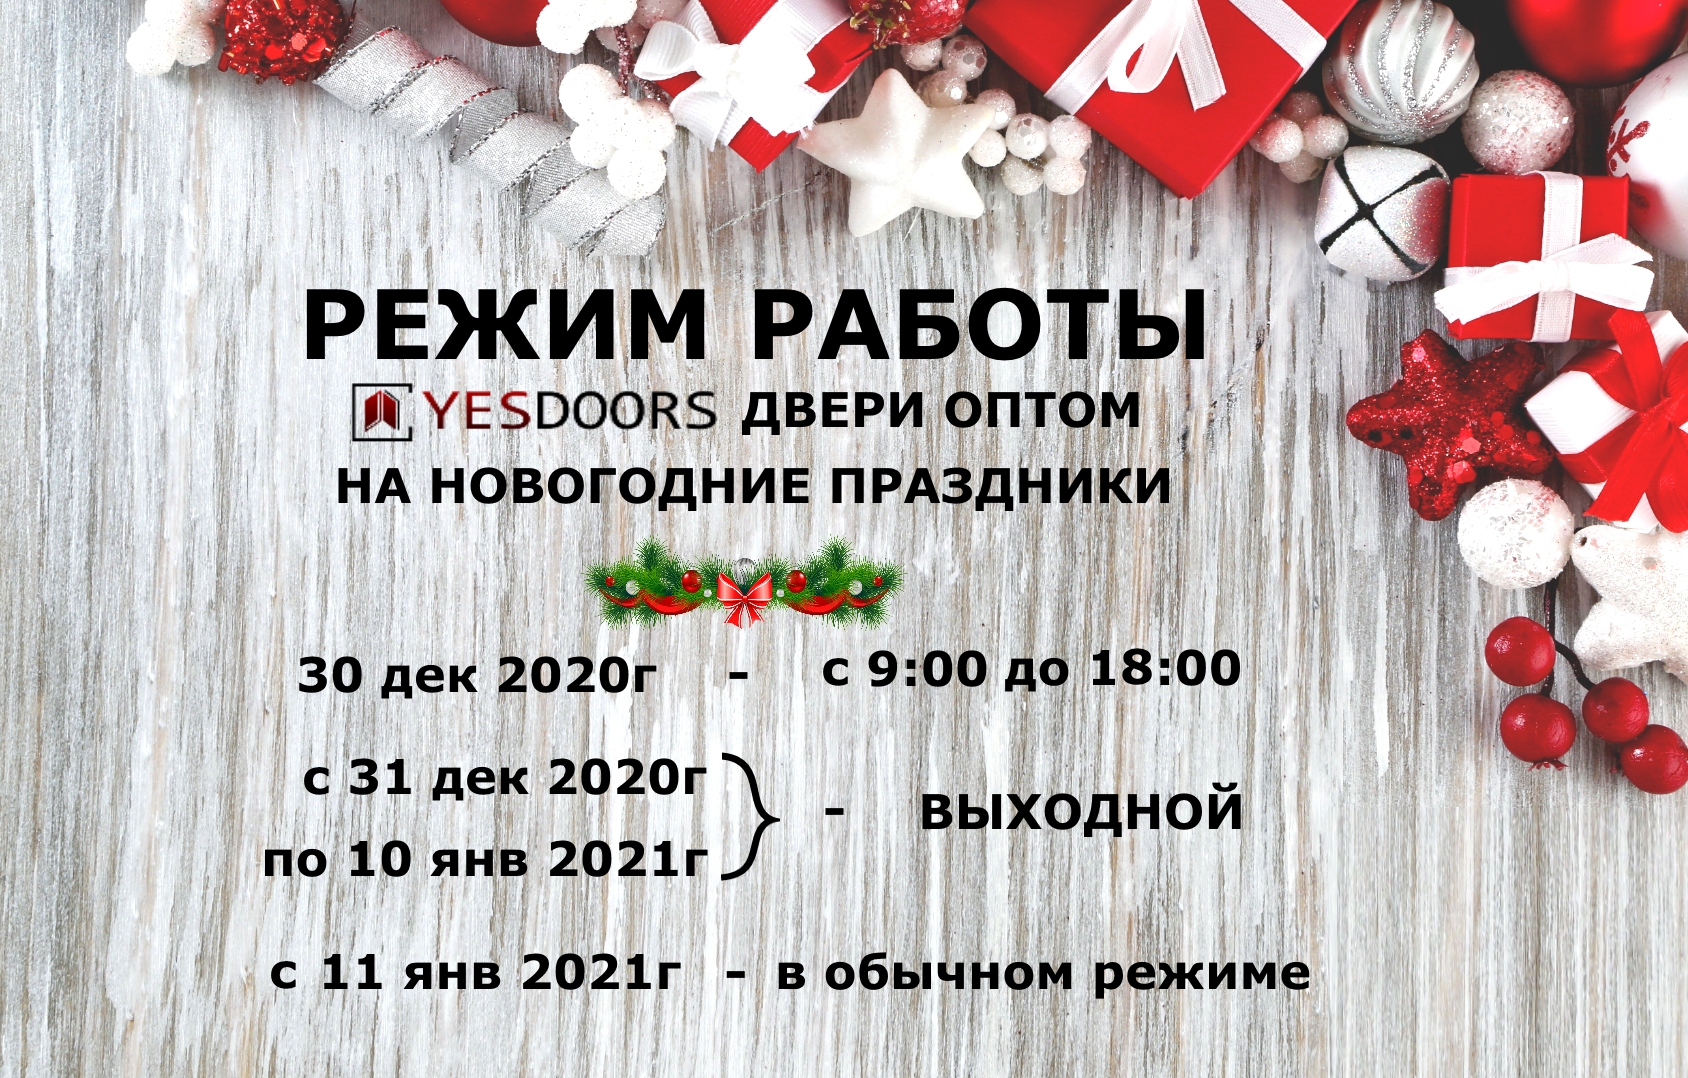 Режим работы фонбет в новогодние праздники покер онлайн скачать бесплатно для компьютера на русском